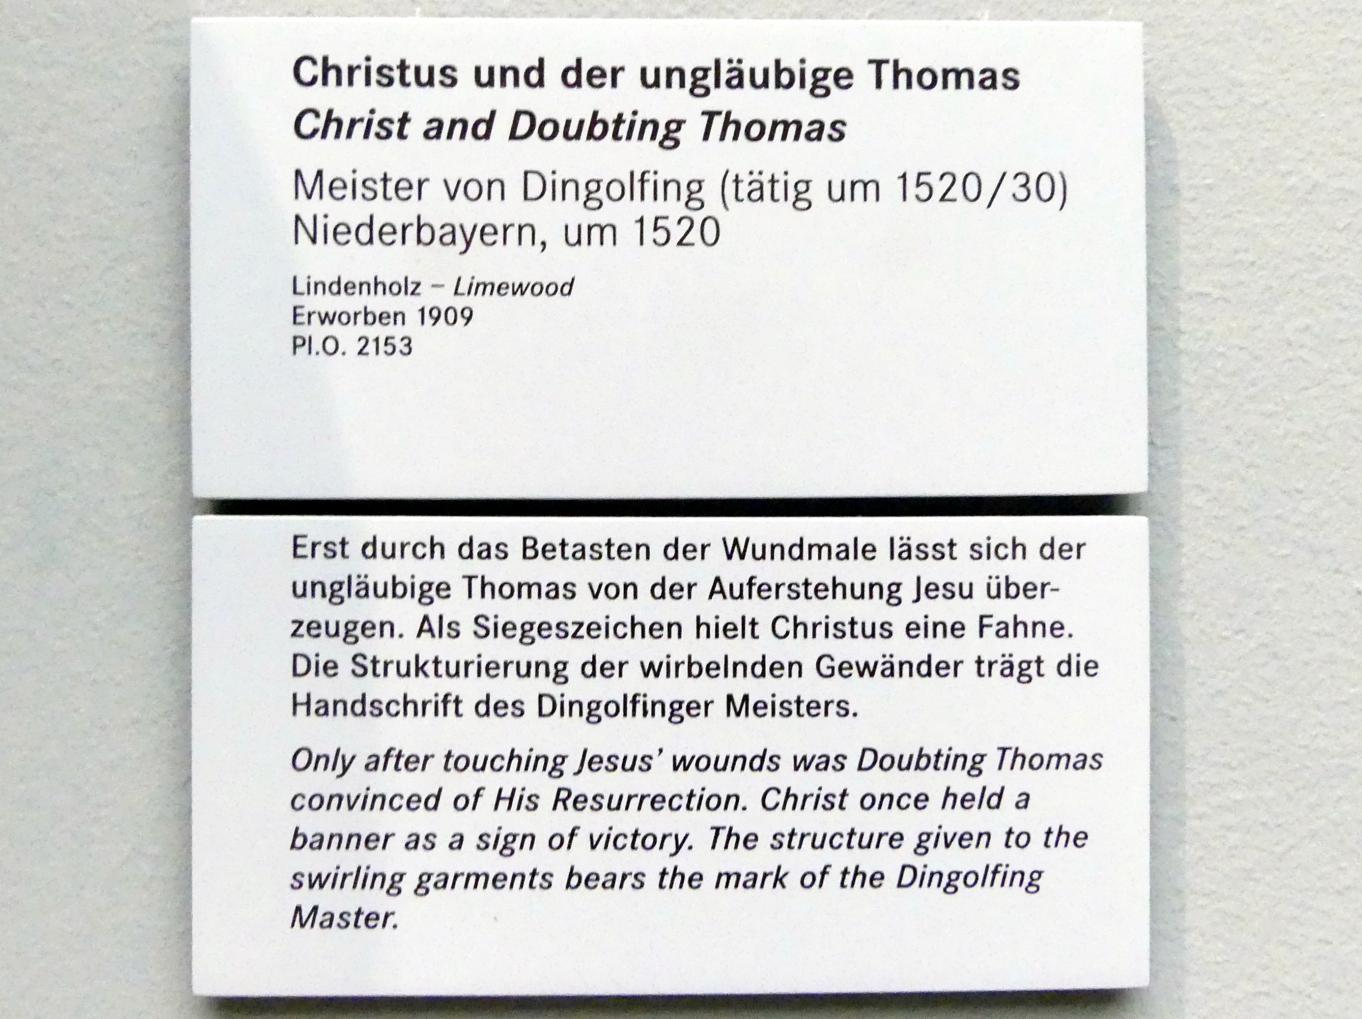 Meister von Dingolfing (1520), Christus und der ungläubige Thomas, Nürnberg, Germanisches Nationalmuseum, Saal 112, um 1520, Bild 2/2